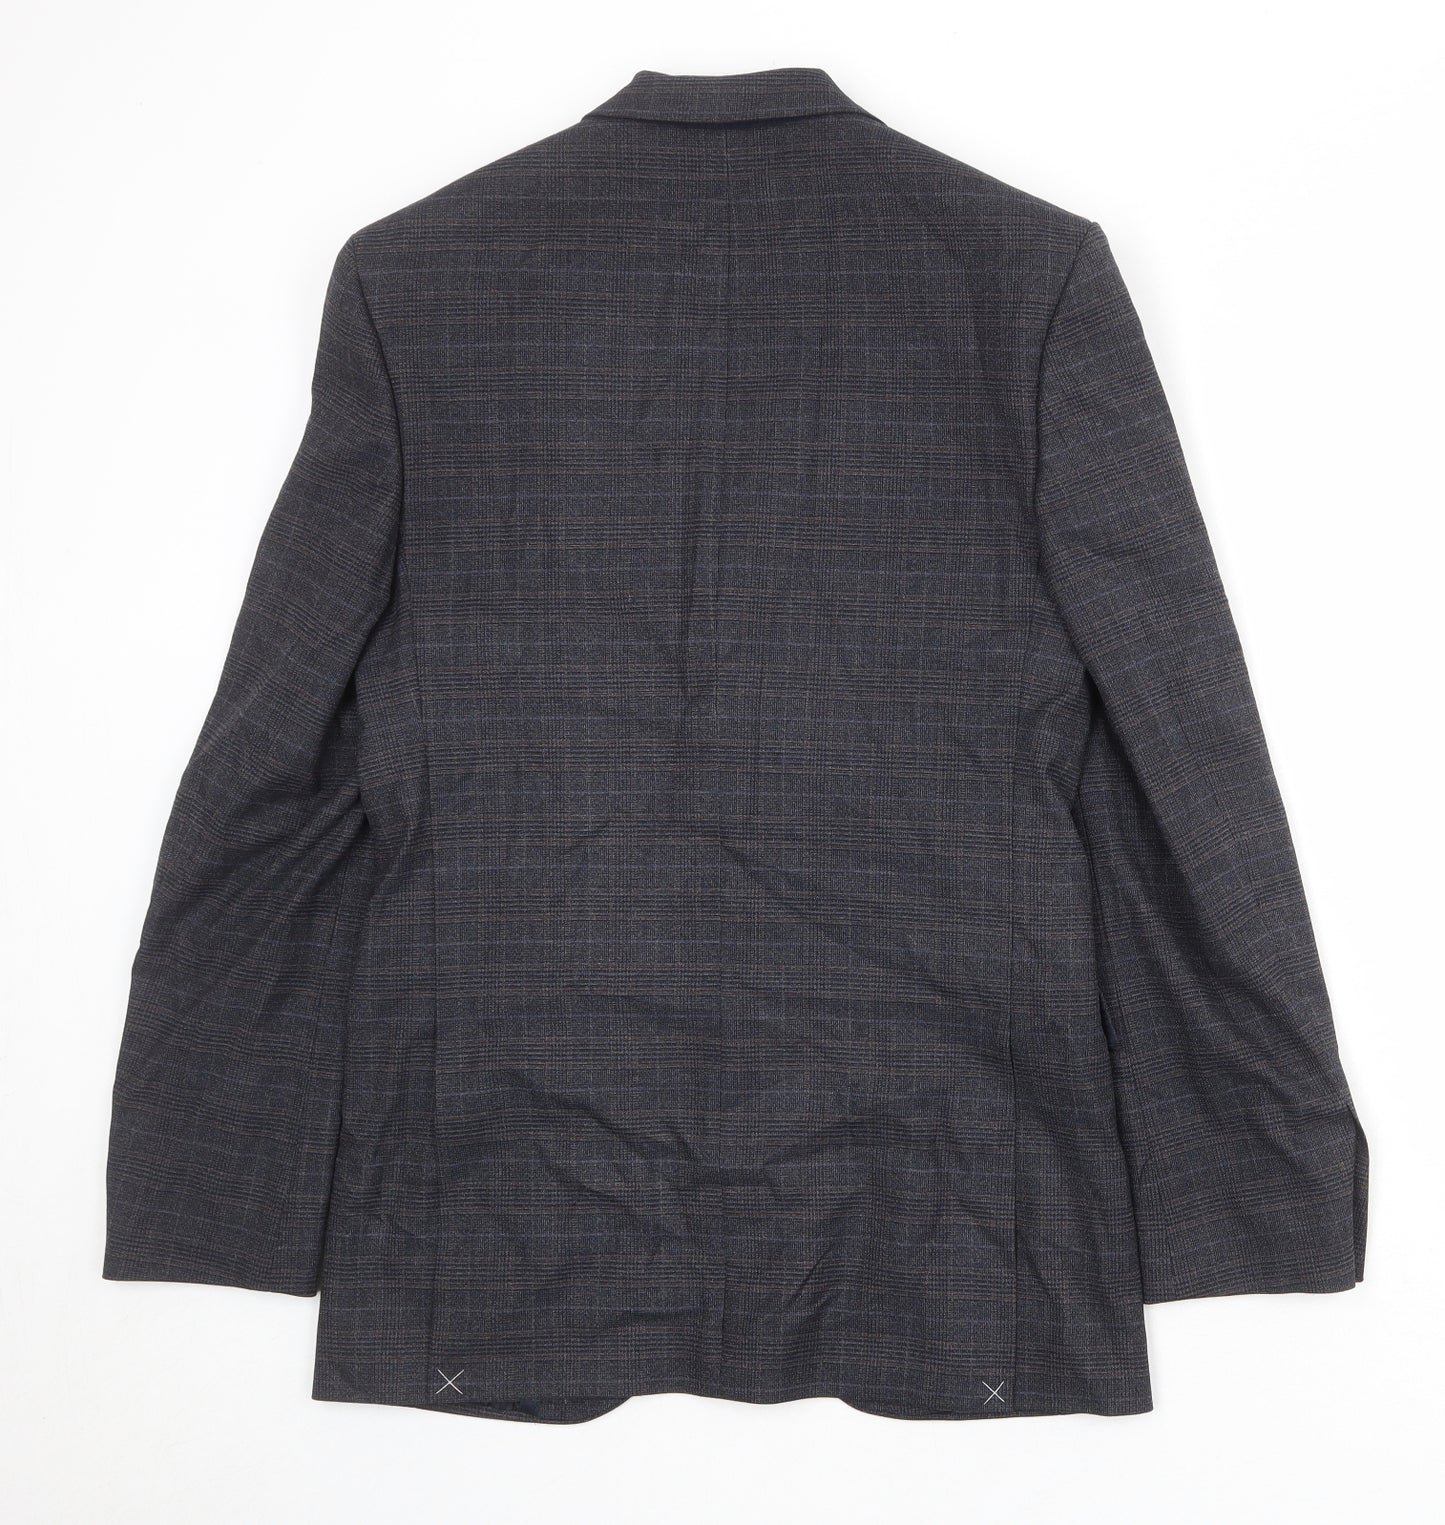 Marks and Spencer Mens Blue Plaid Polyester Jacket Suit Jacket Size 36 Regular